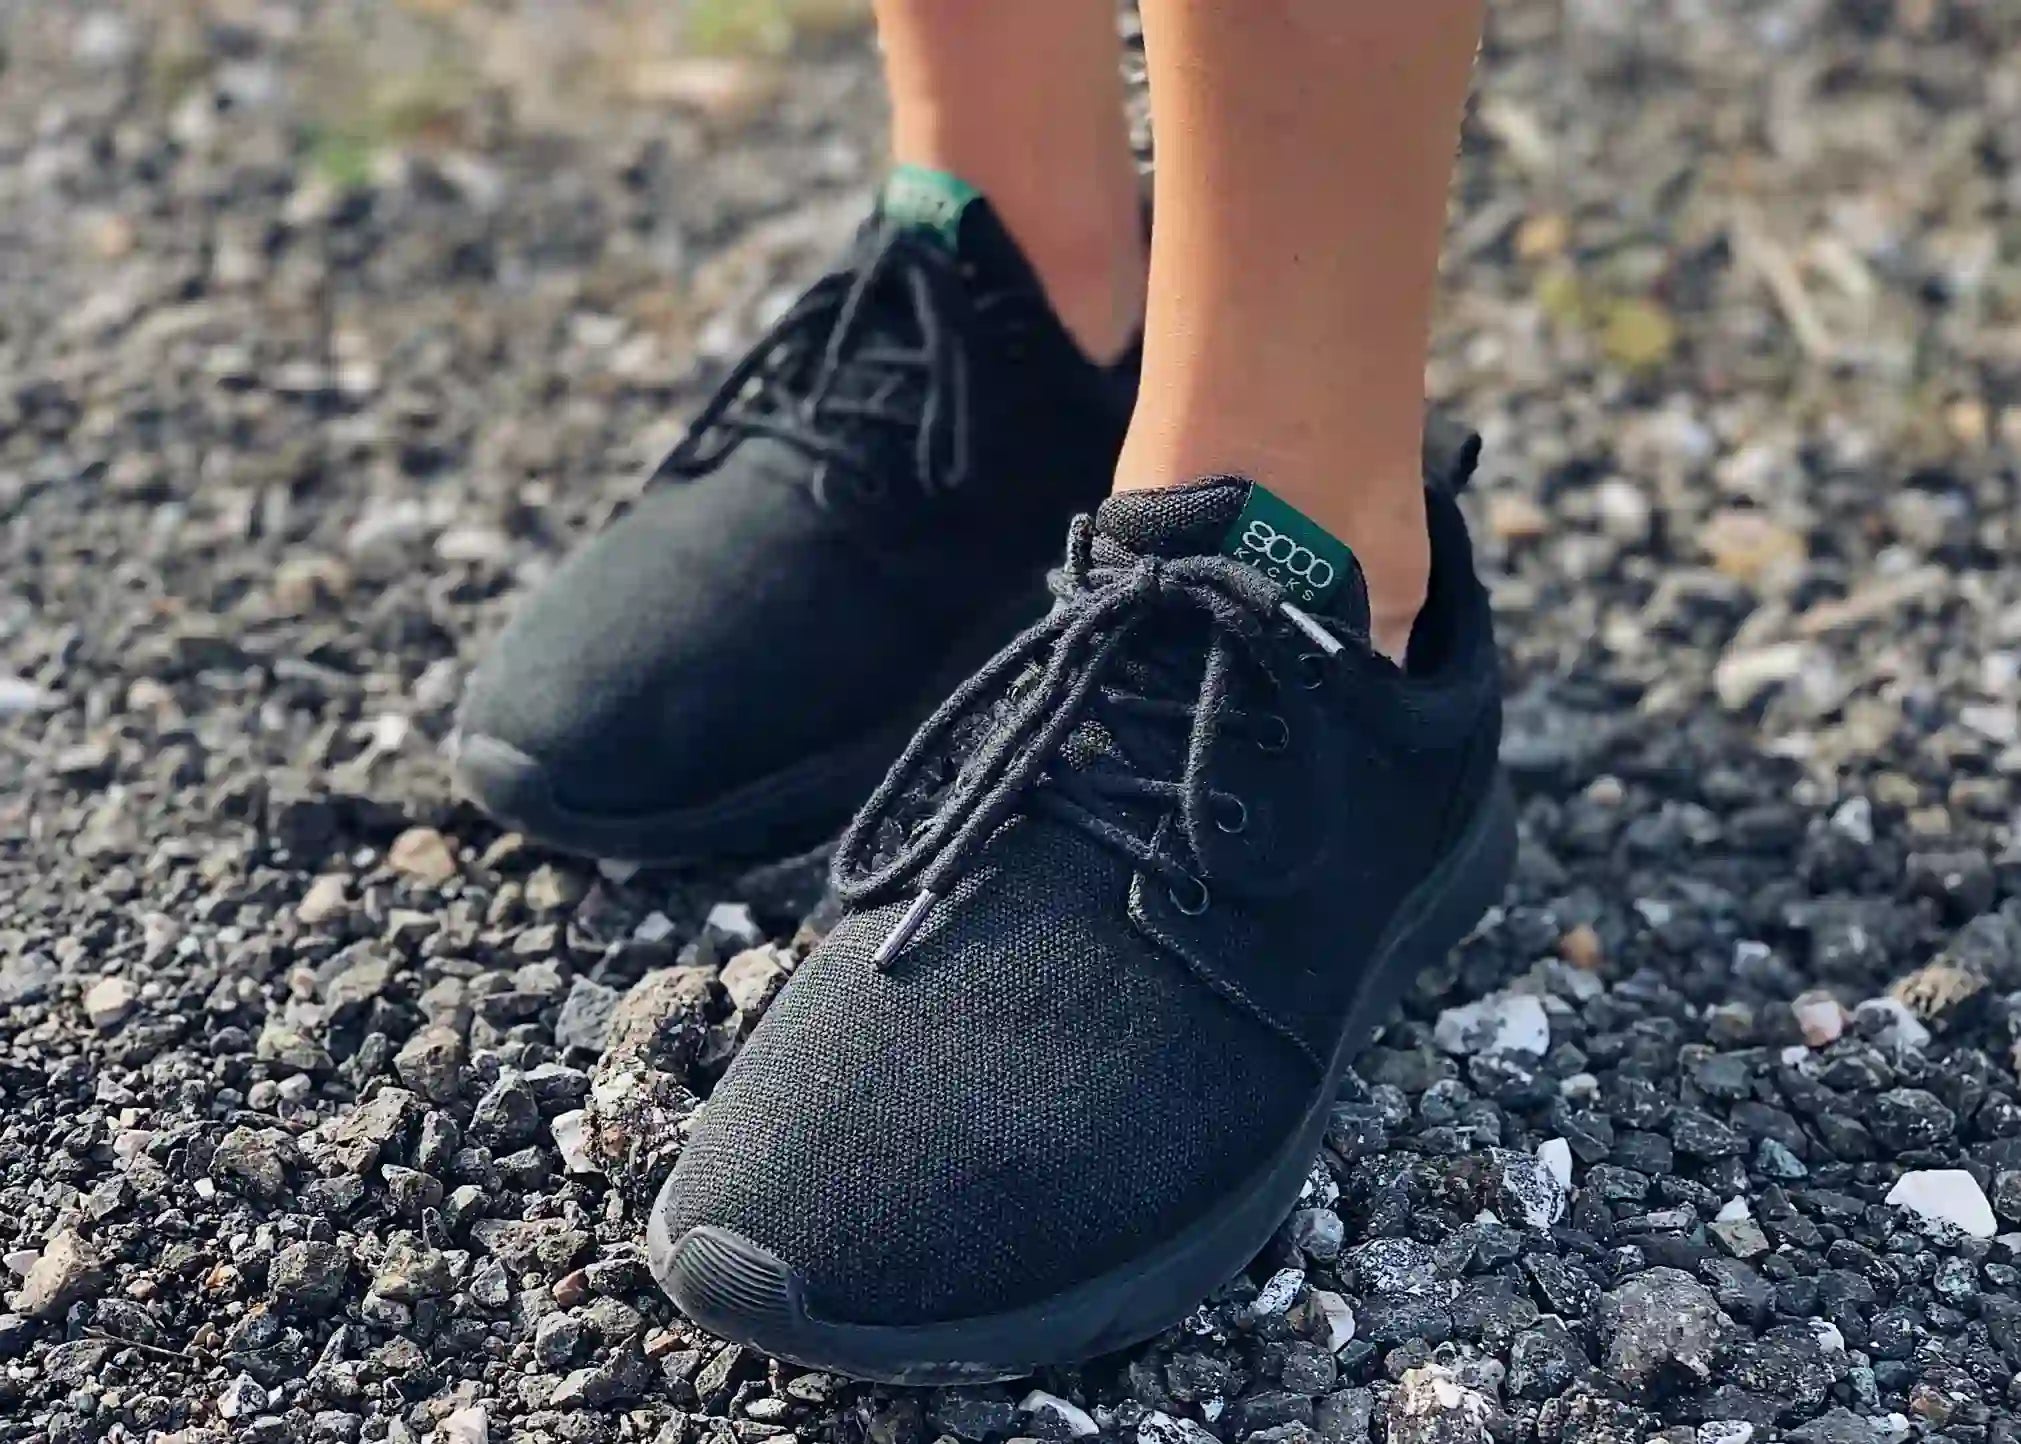 Full black Explorer V2 hemp shoes for men.